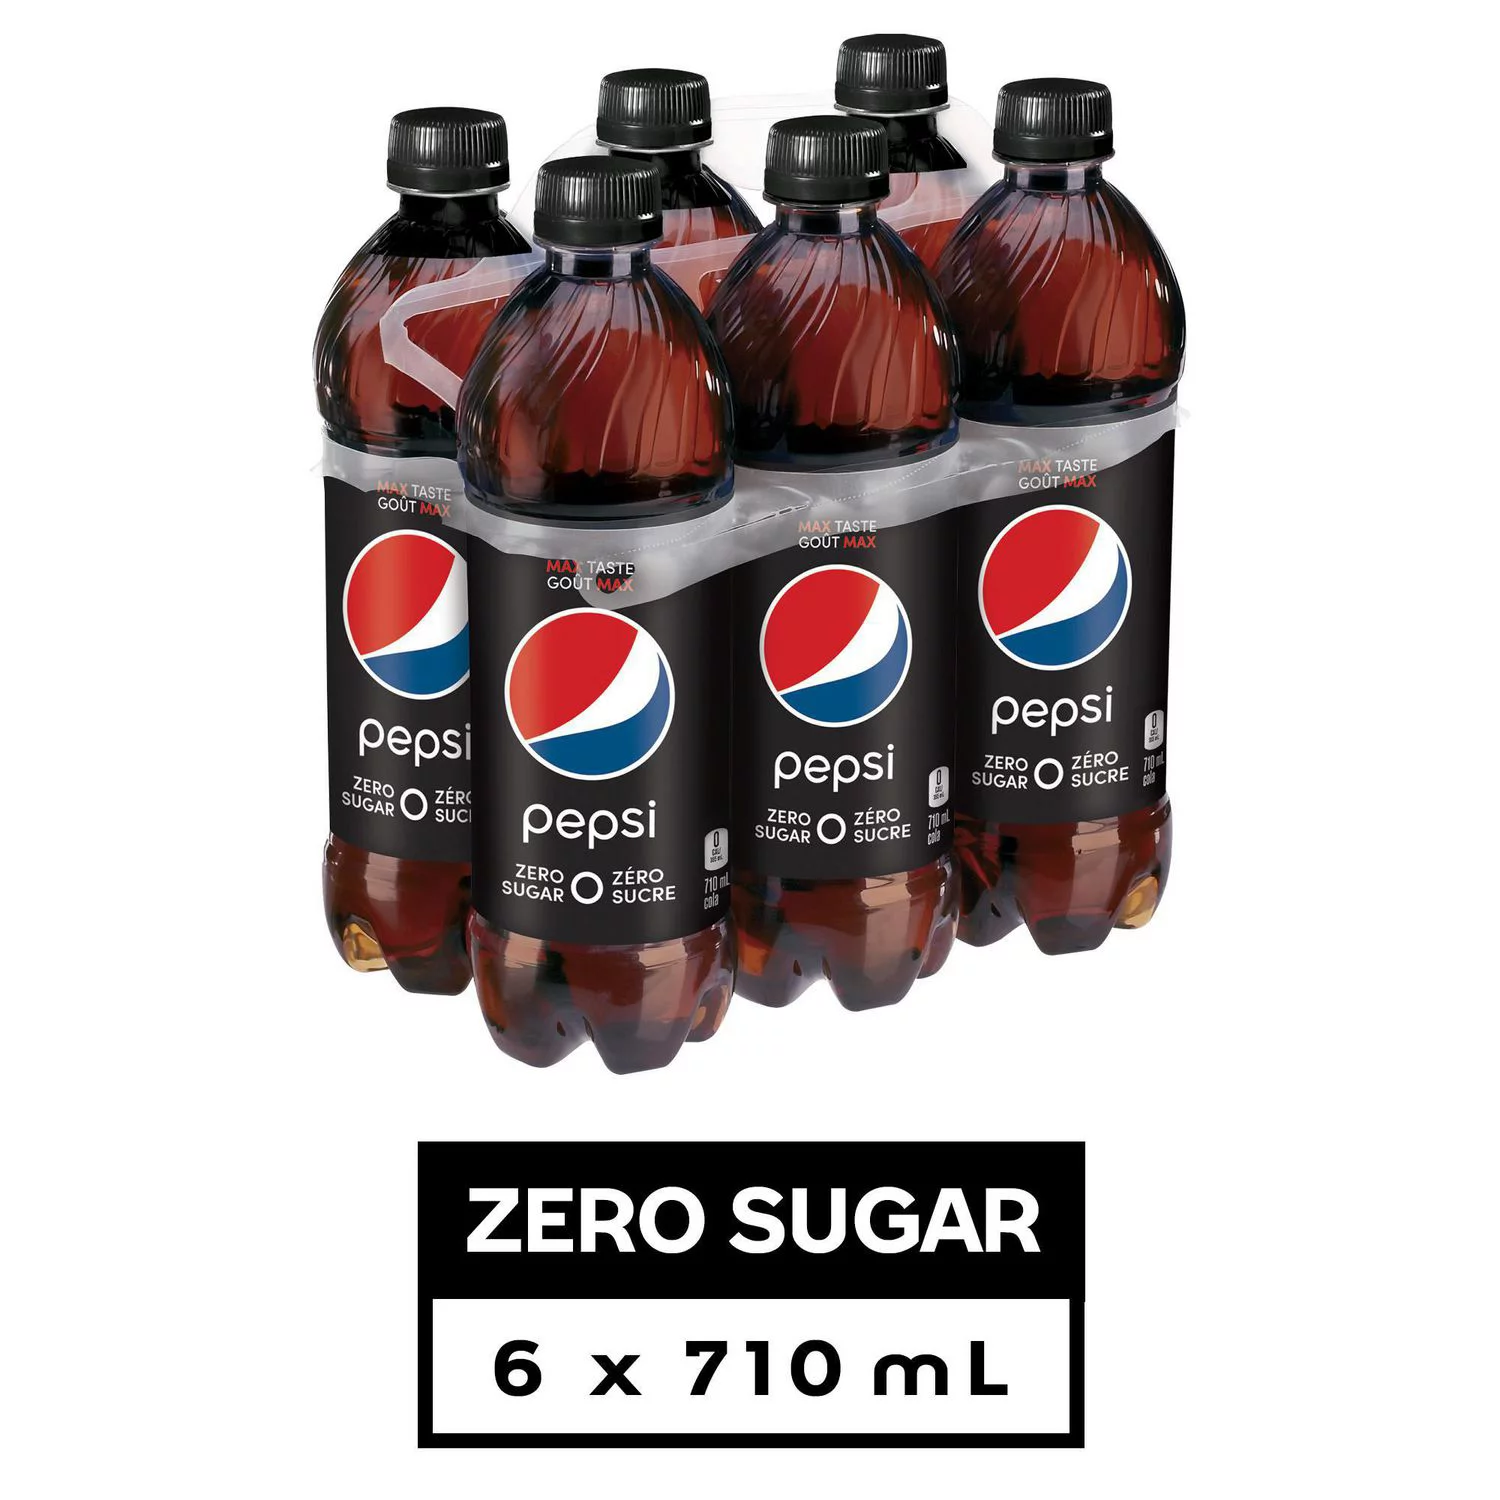 Pepsi Max 710ml Bottles, 6 Pack